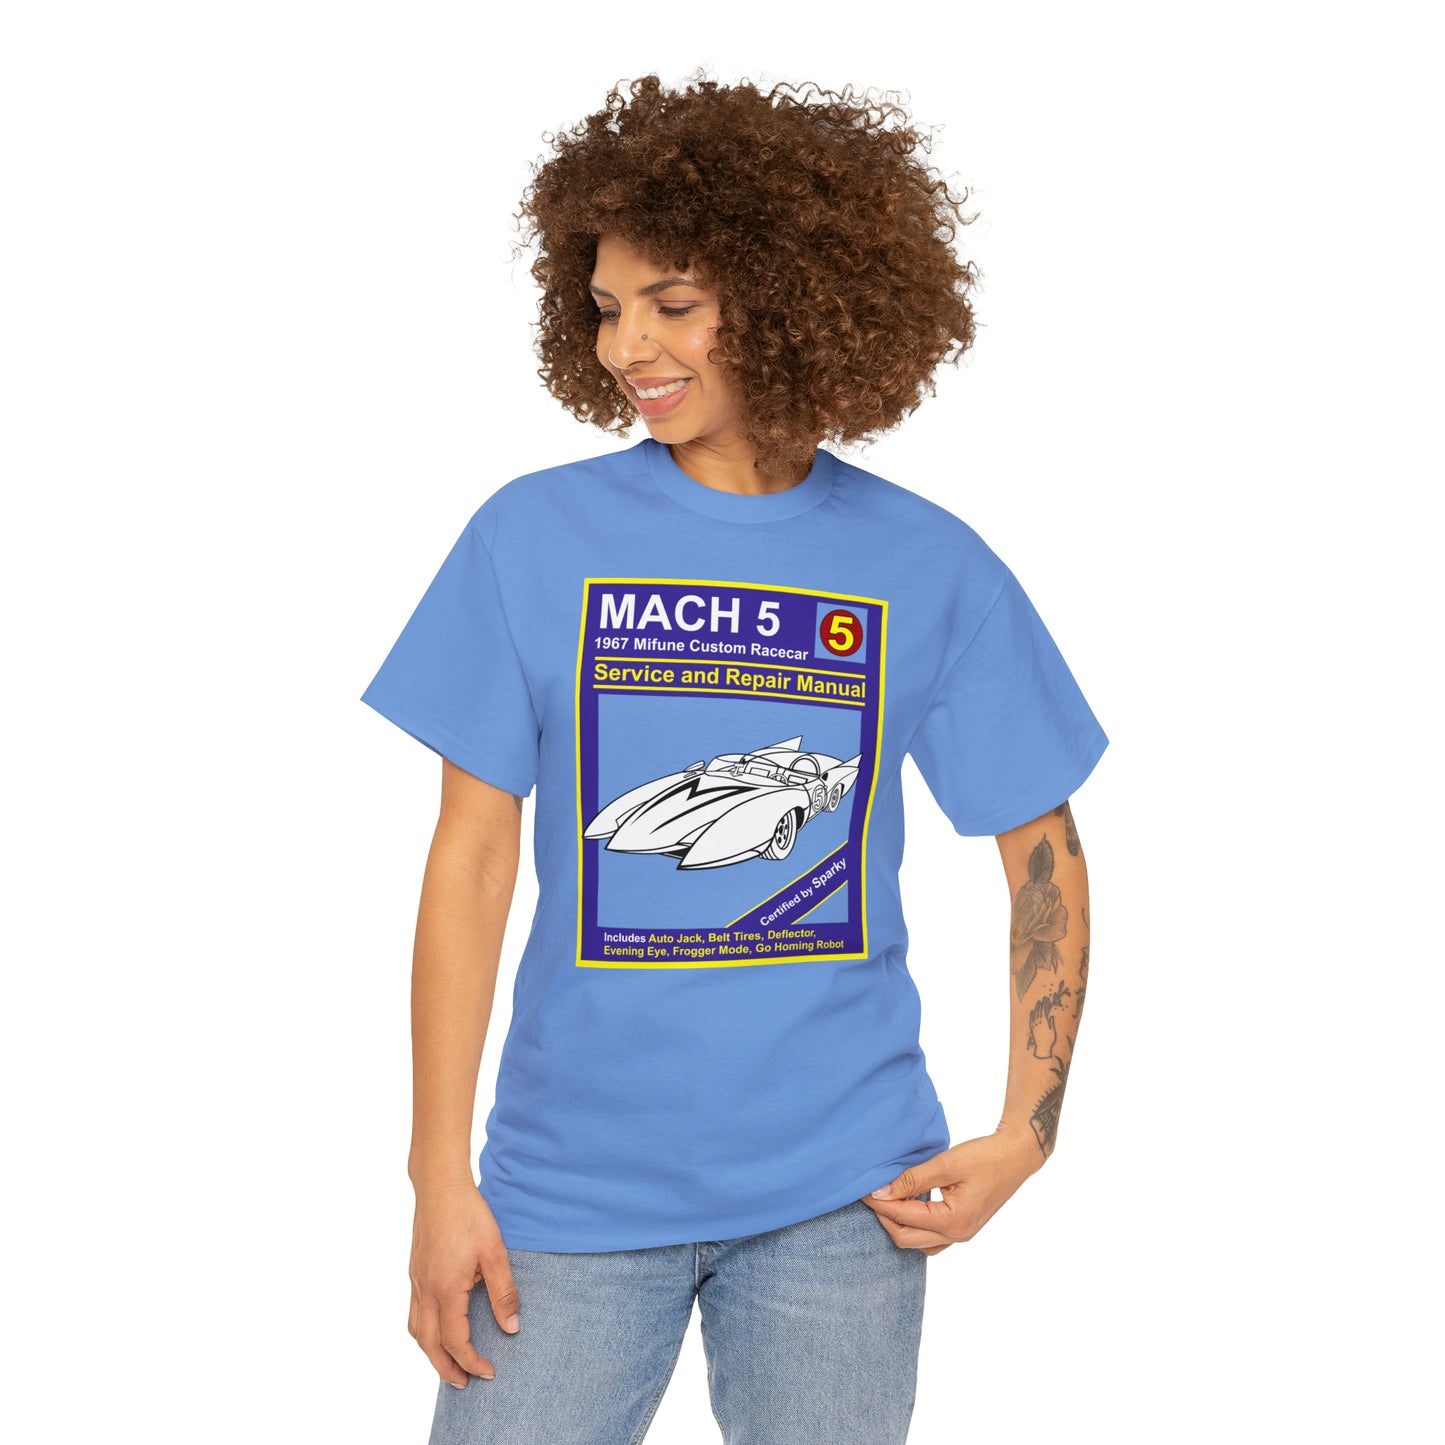 Mach 5 Repair manual t-shirt